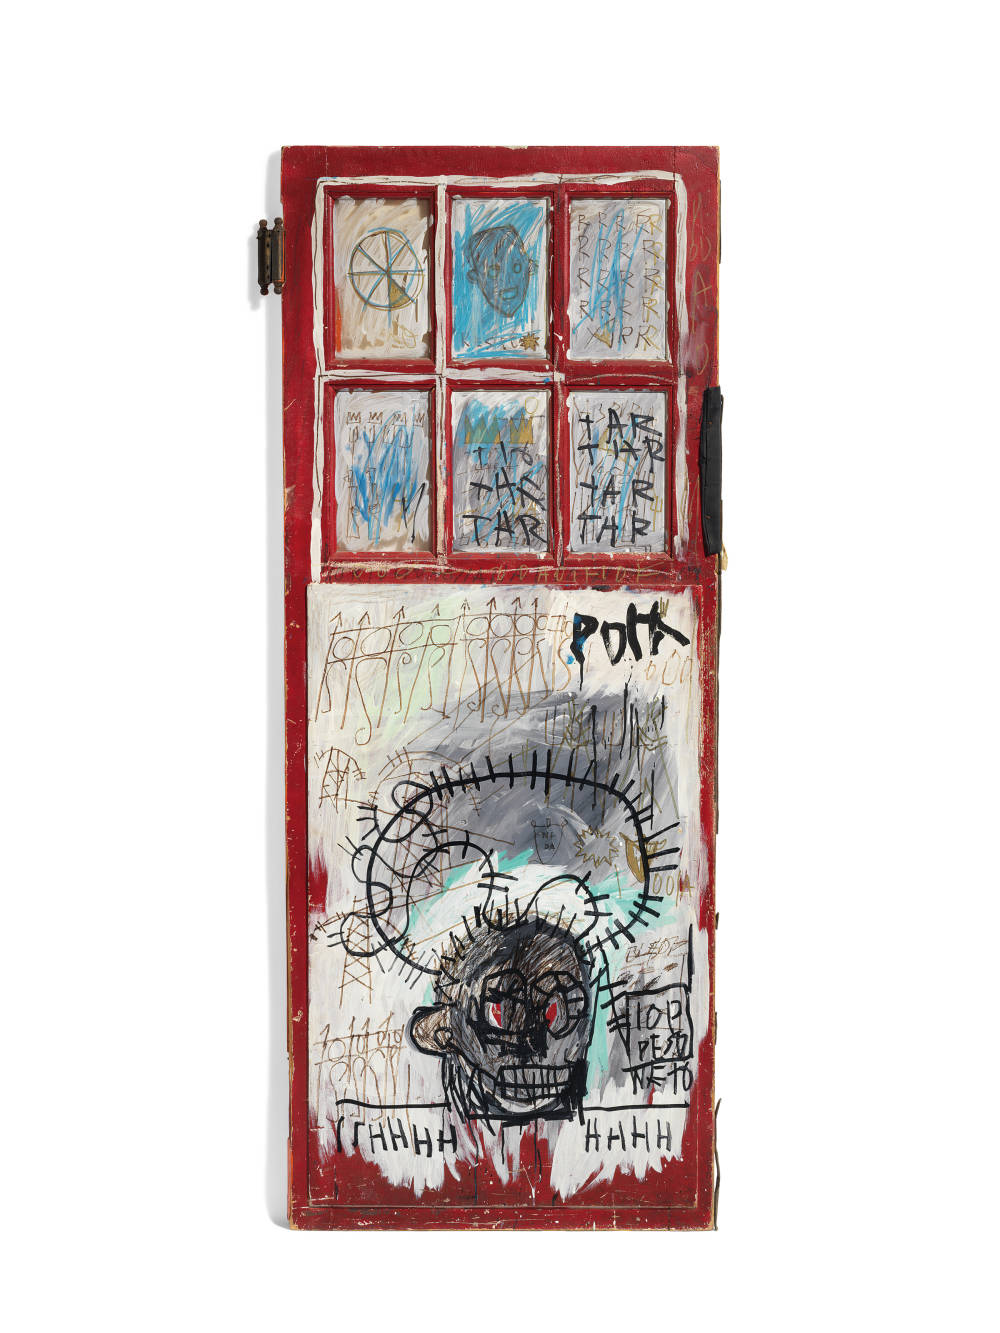  Jean-Michel Basquiat, Pork, 1981 